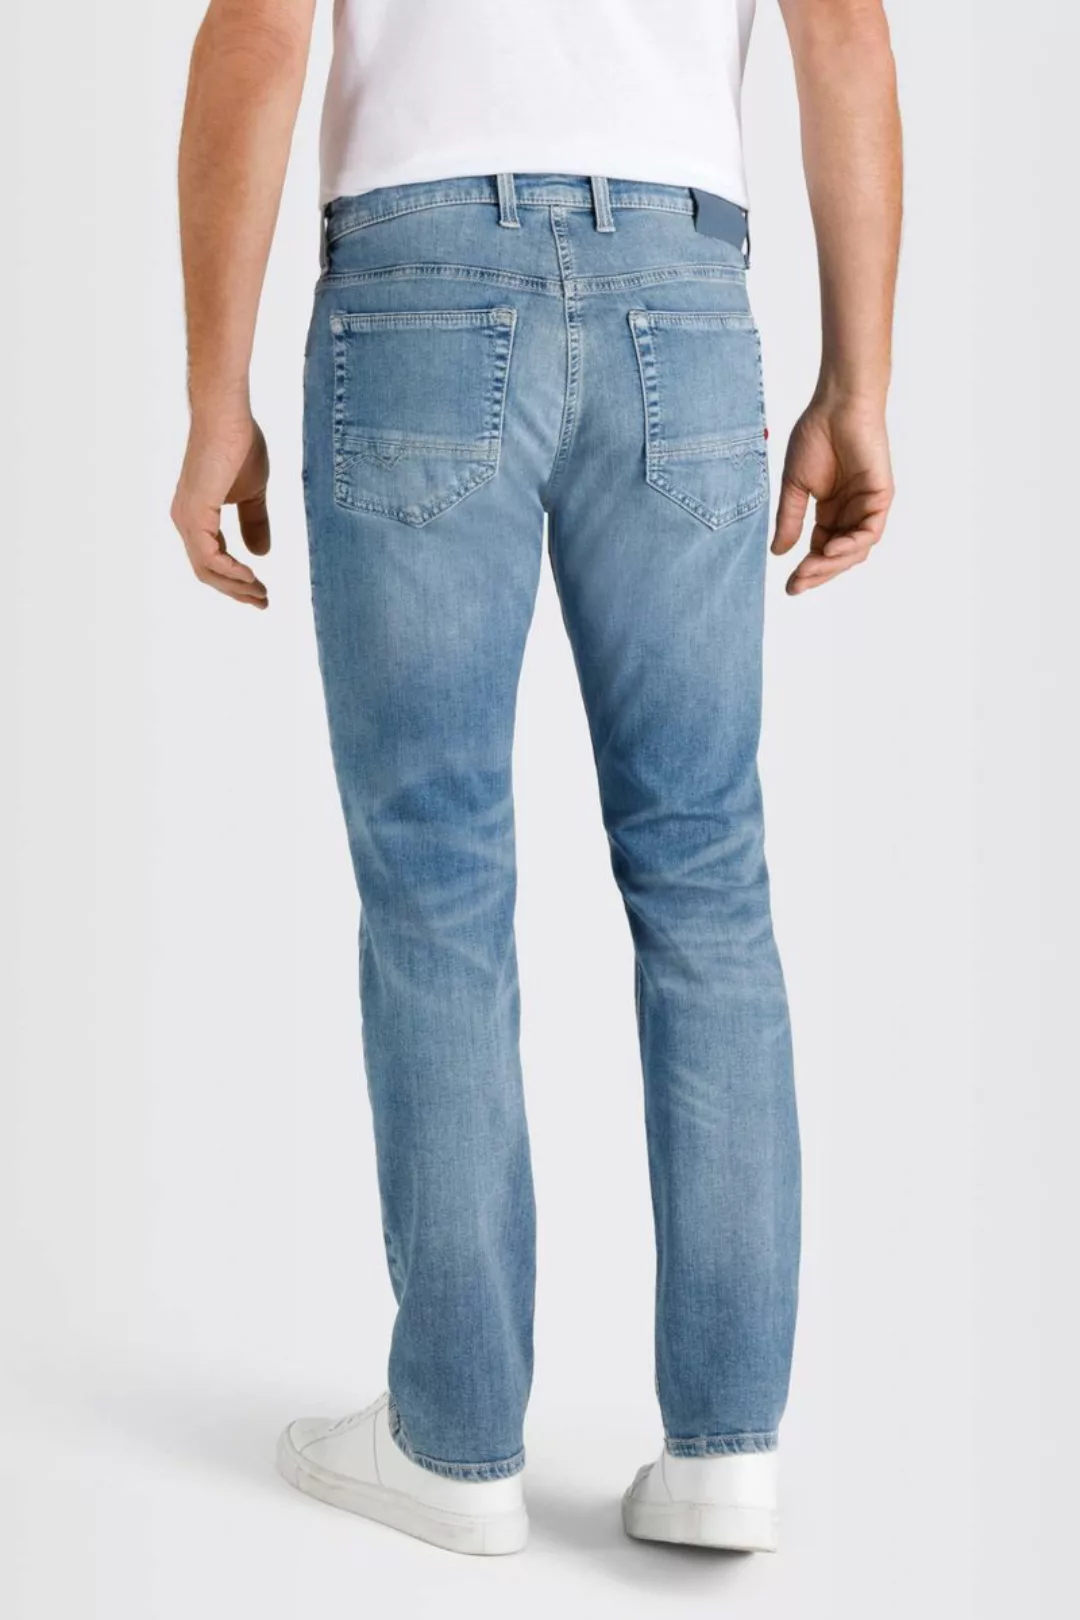 MAC Jeans Arne Pipe Hellblau - Größe W 33 - L 34 günstig online kaufen